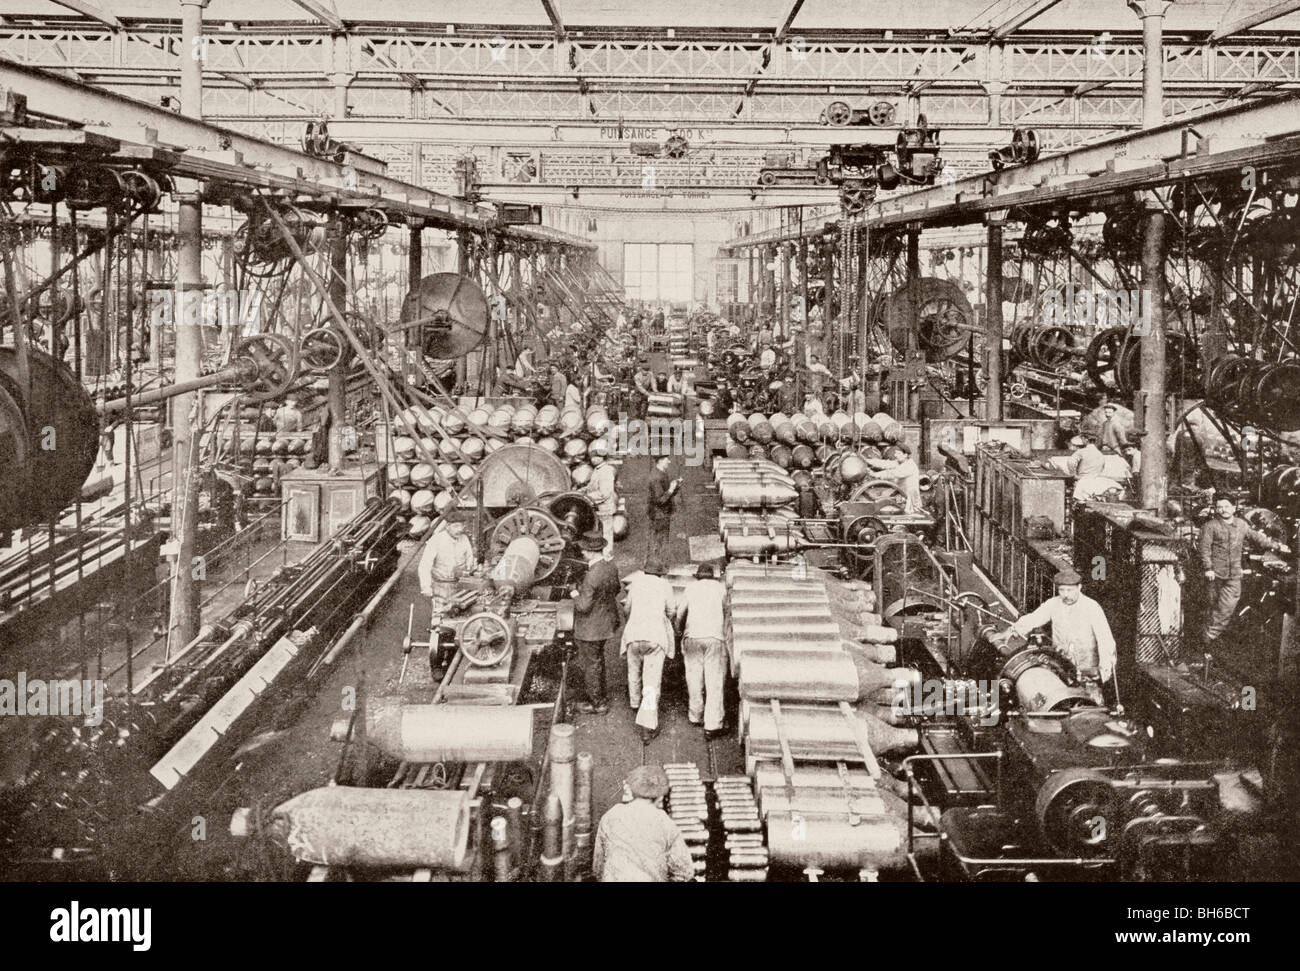 Fabrique de munitions dans le Creusot, en France la production d'obus de gros calibre pendant la Première Guerre mondiale. Banque D'Images